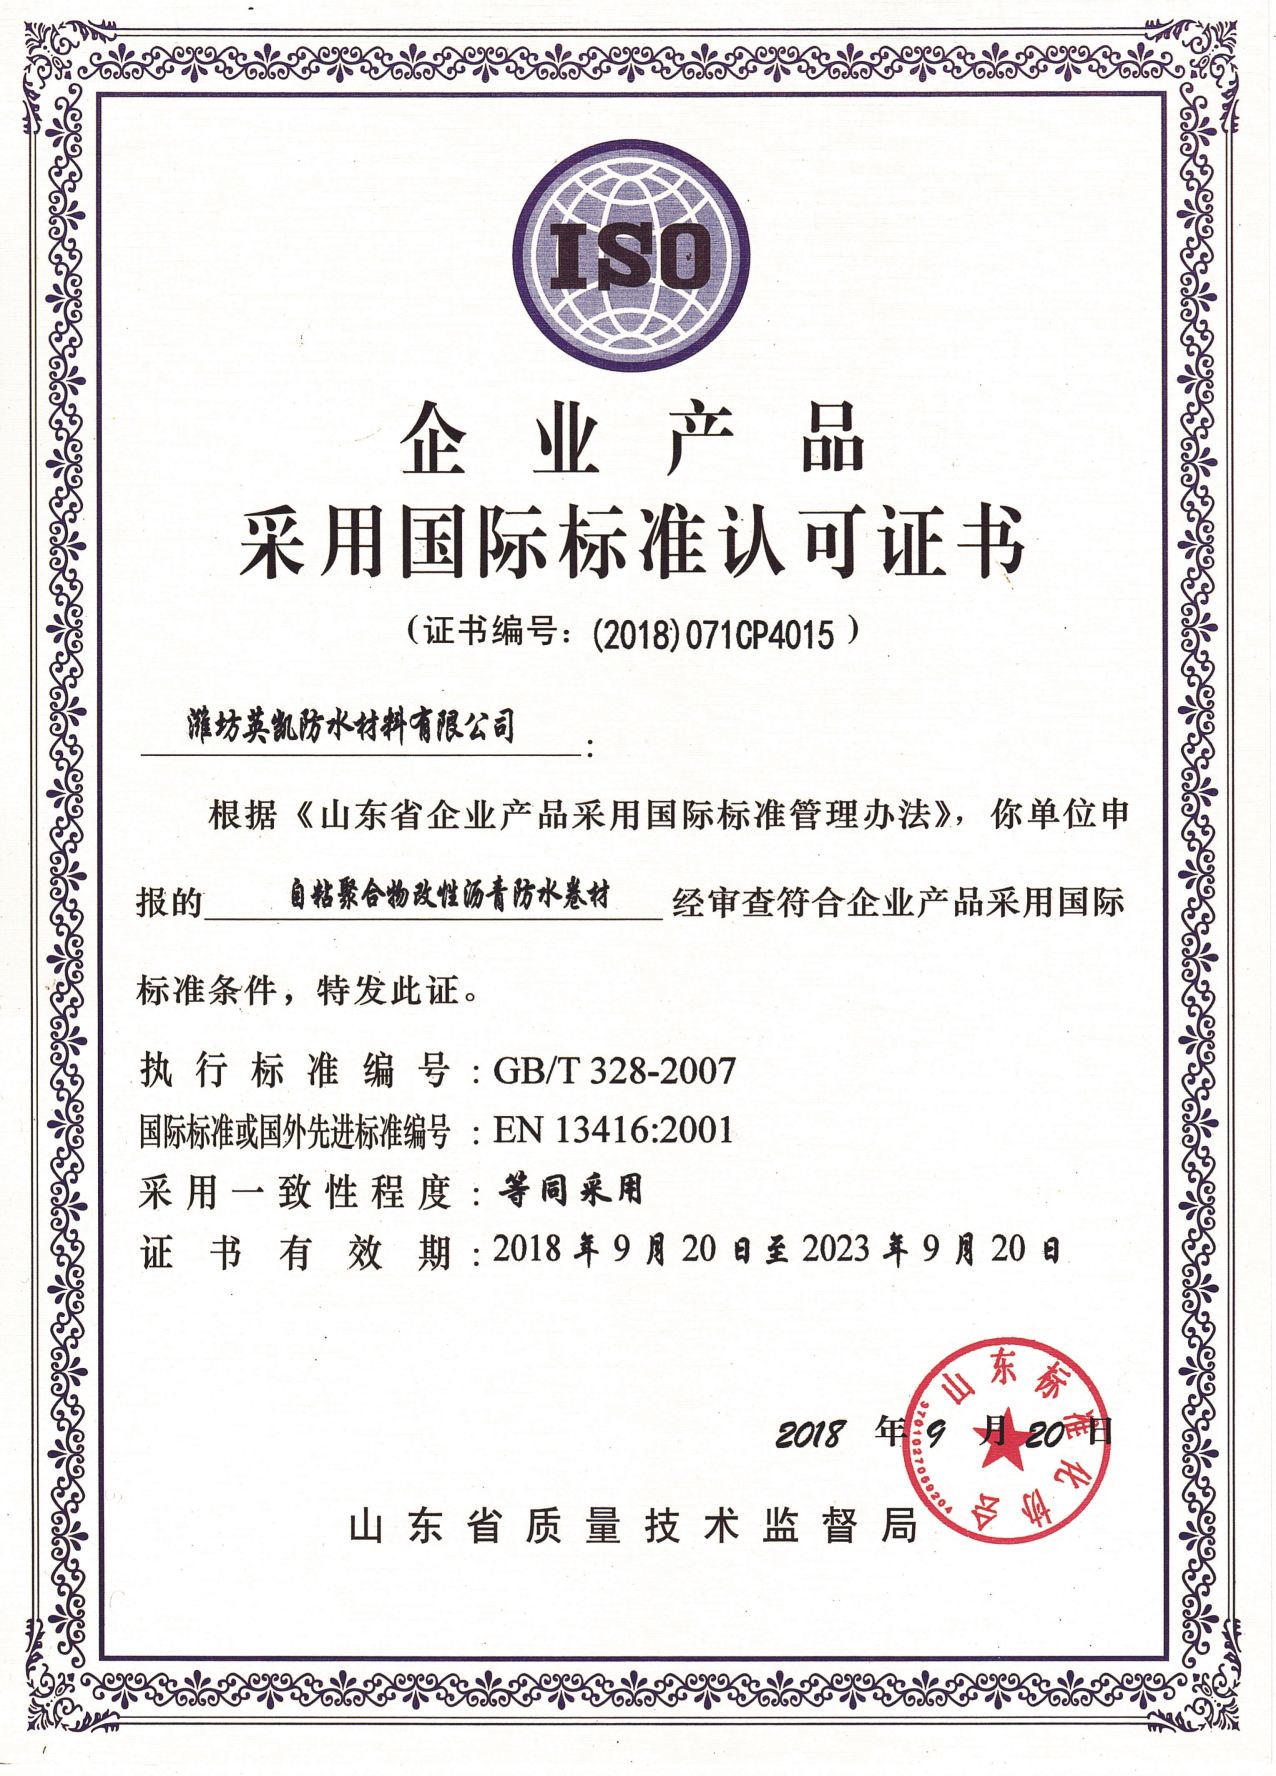 企业产品采用国际标准认可证书